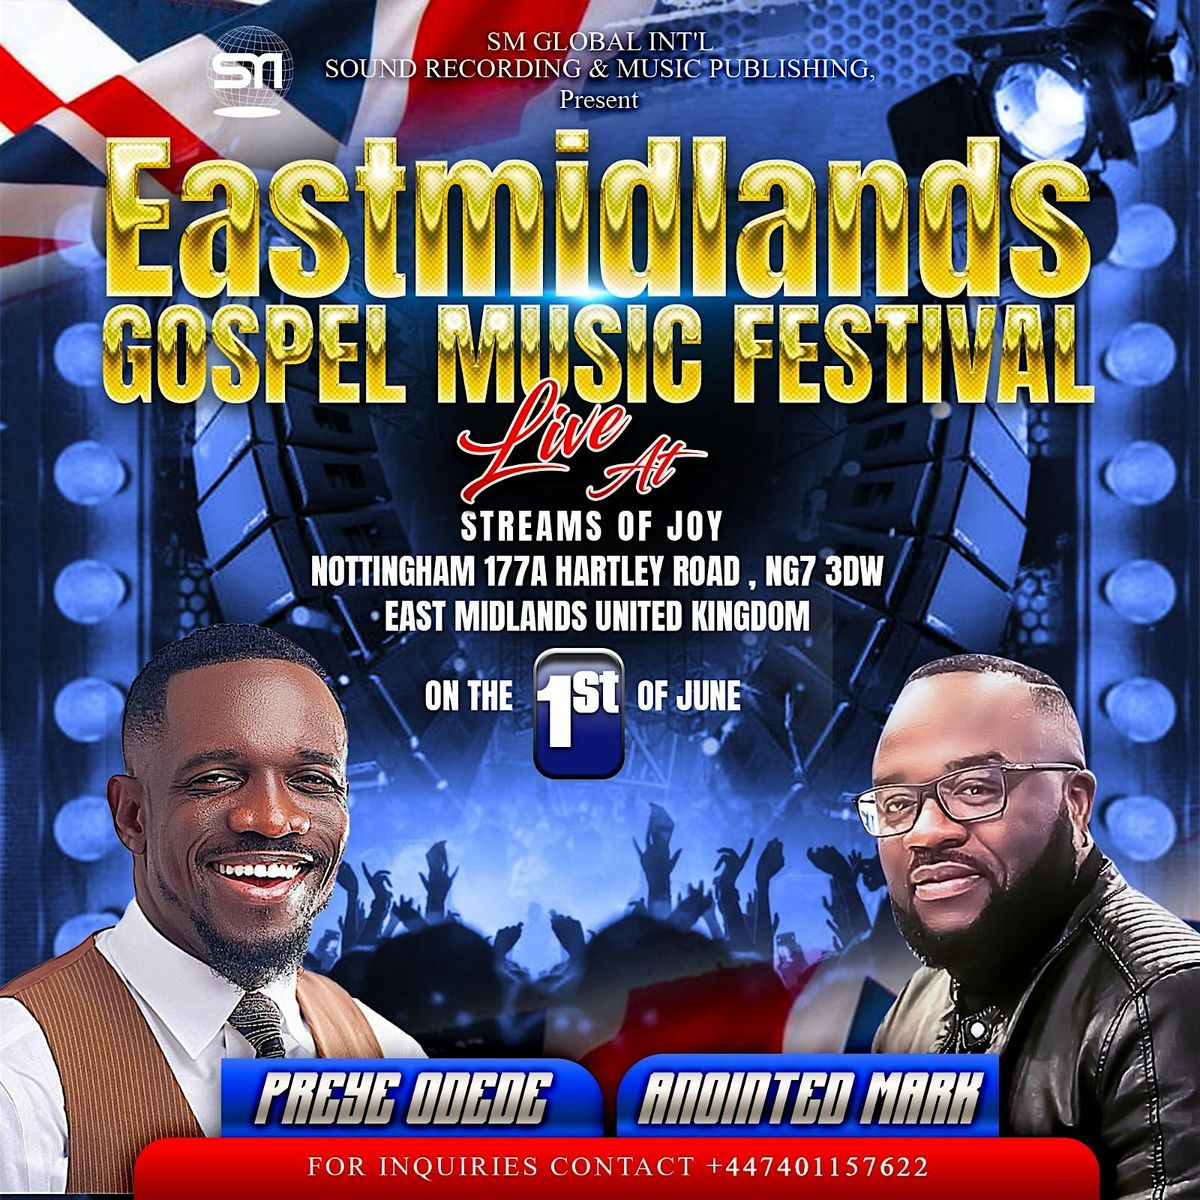 Eastmidlands Gospel Music Festival